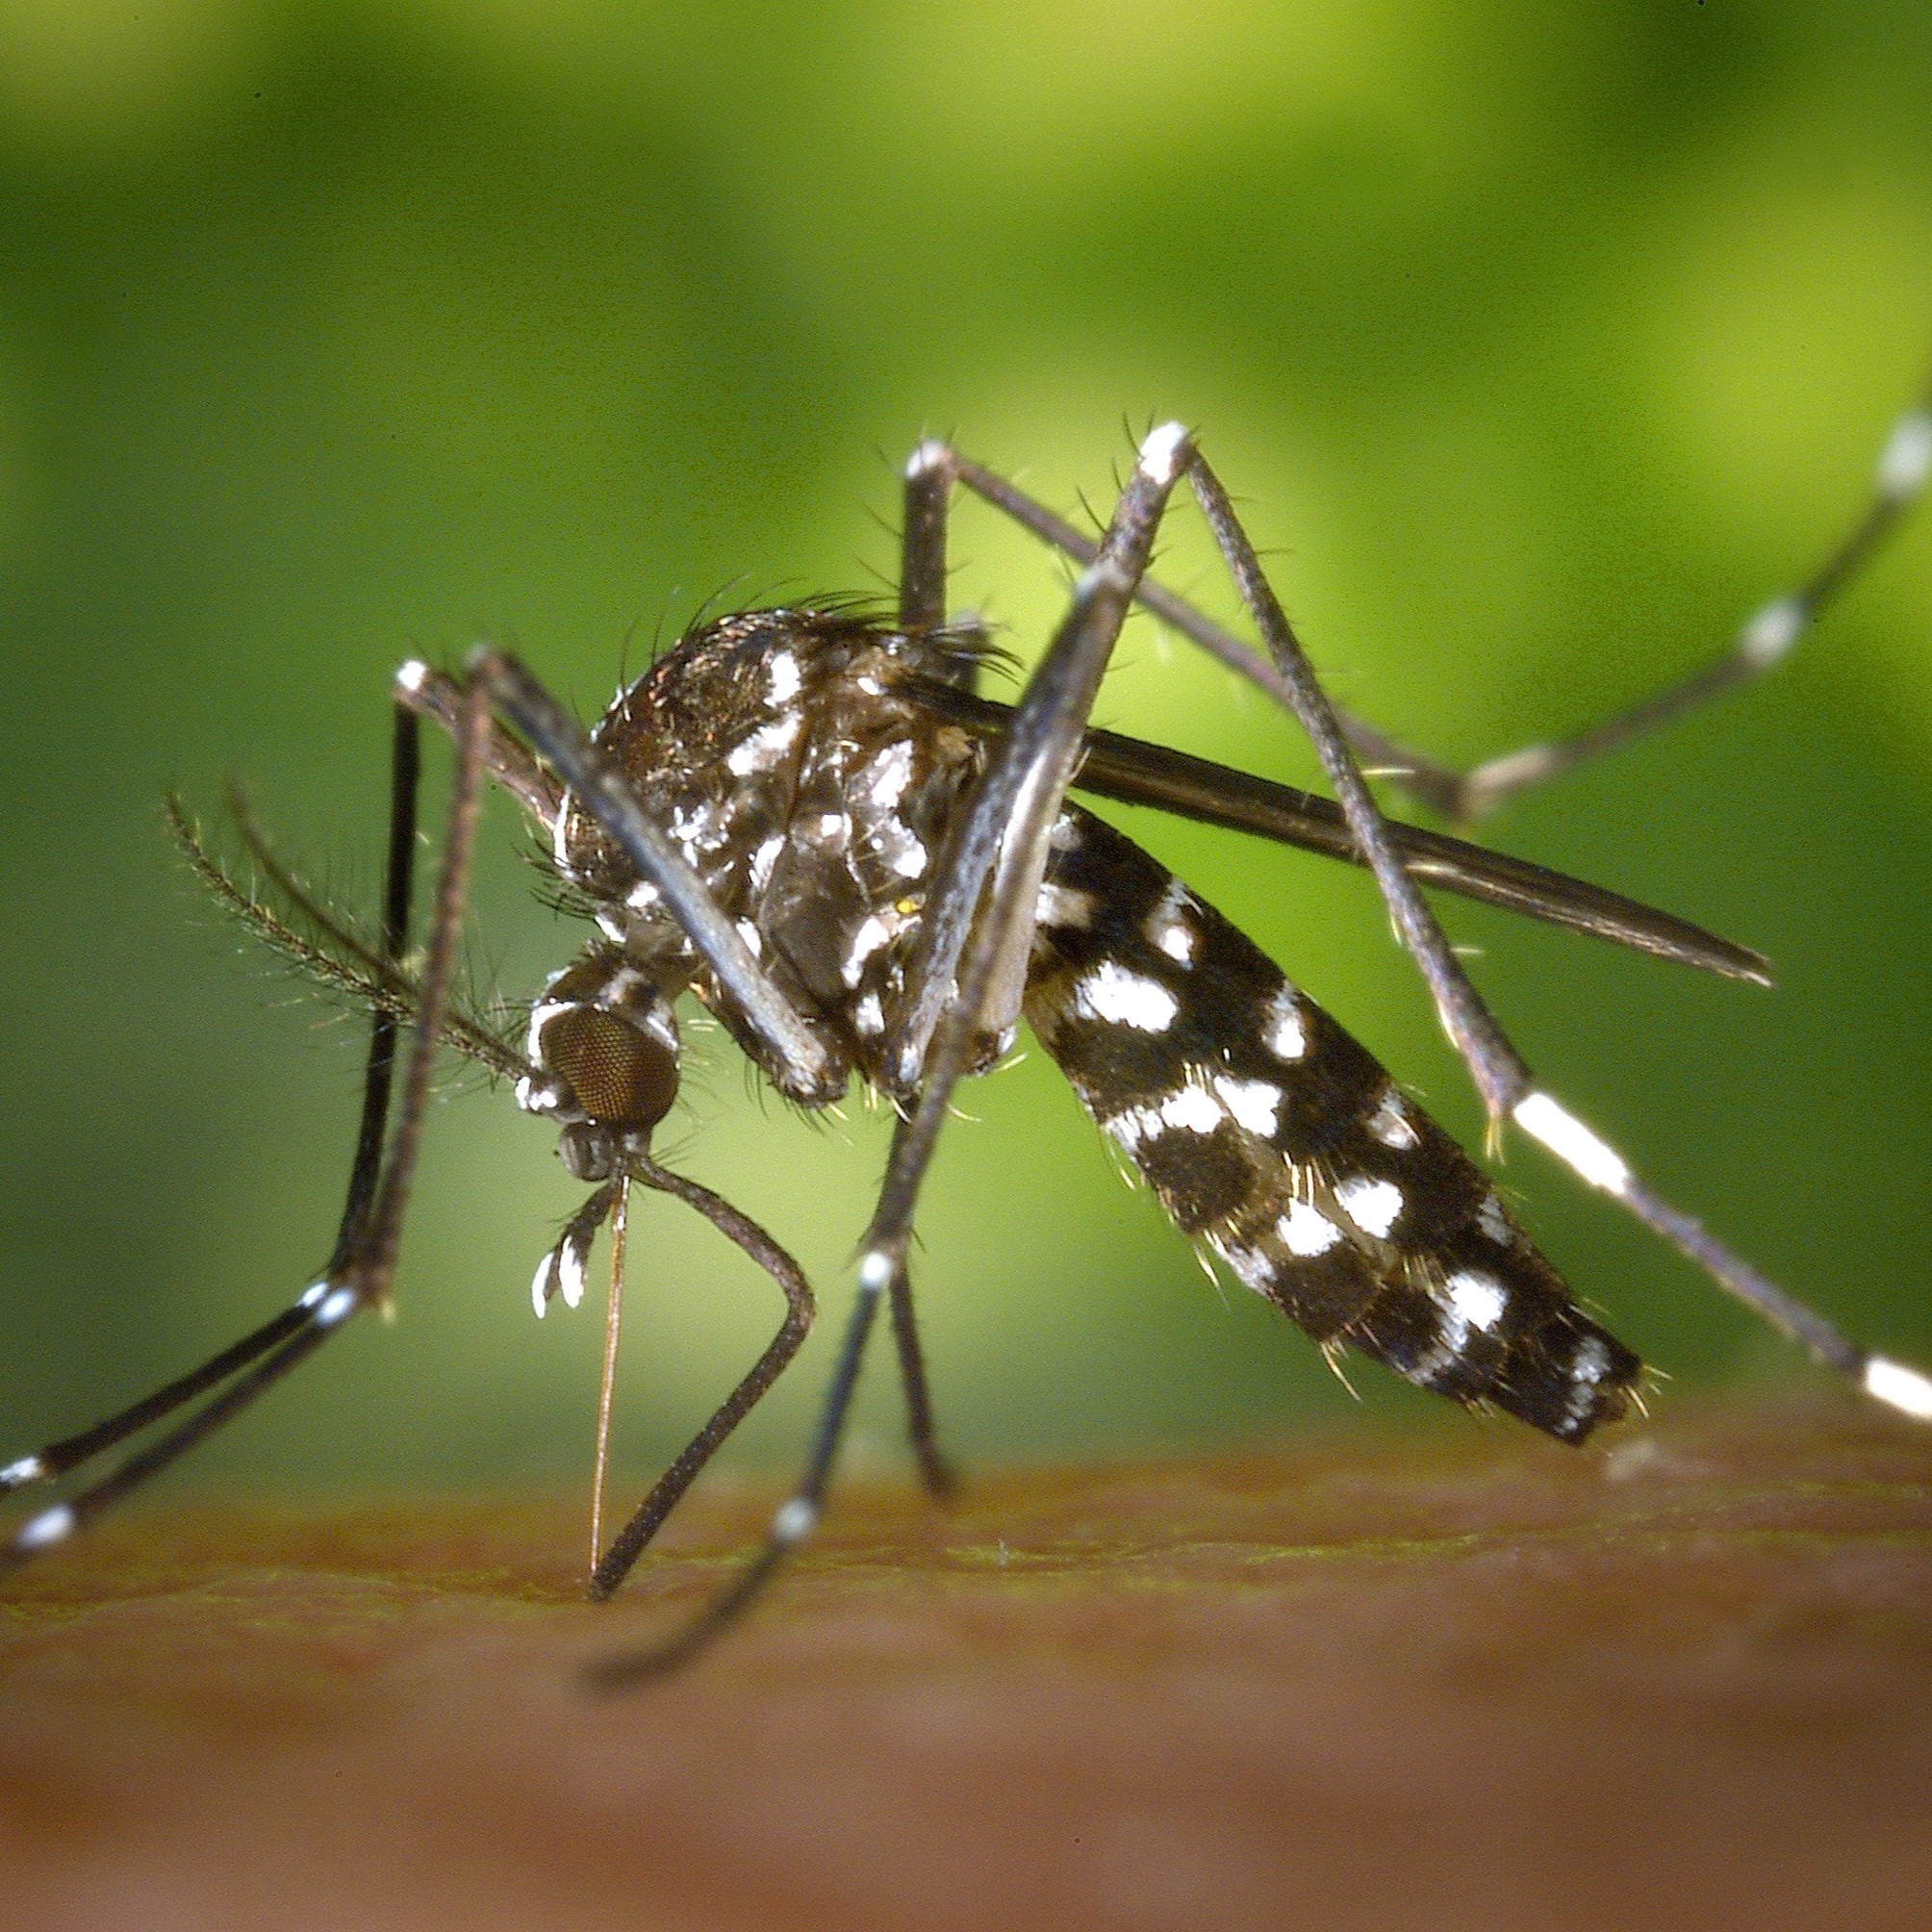  Aedes aegypti 